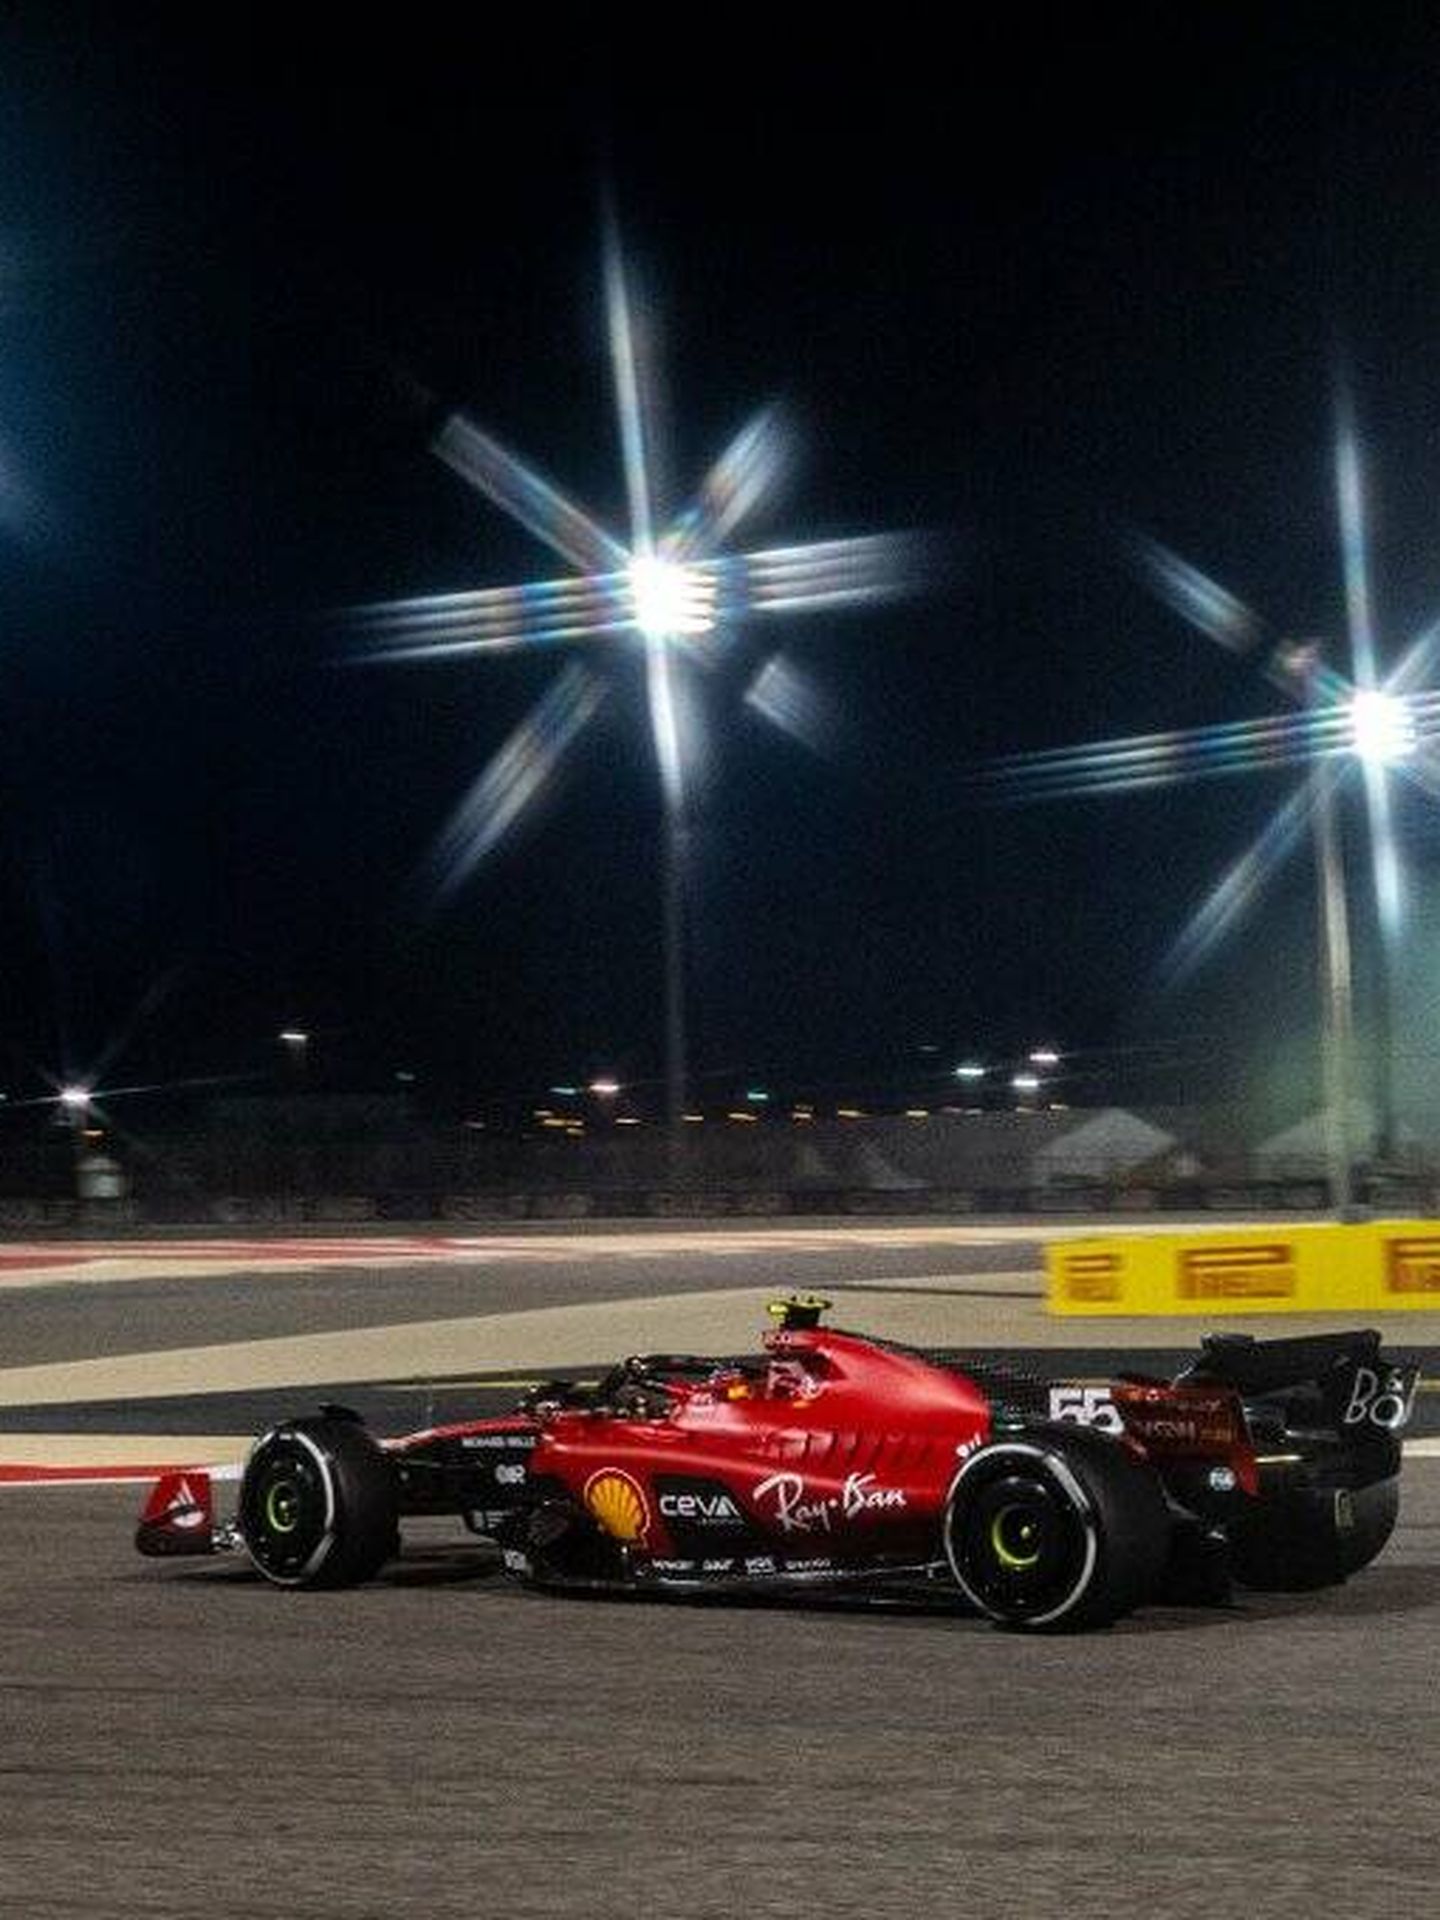 Un cuarto puesto logrado con mucho sufrimiento para Carlos Sainz en Baréin. (Scuderia Ferrari)